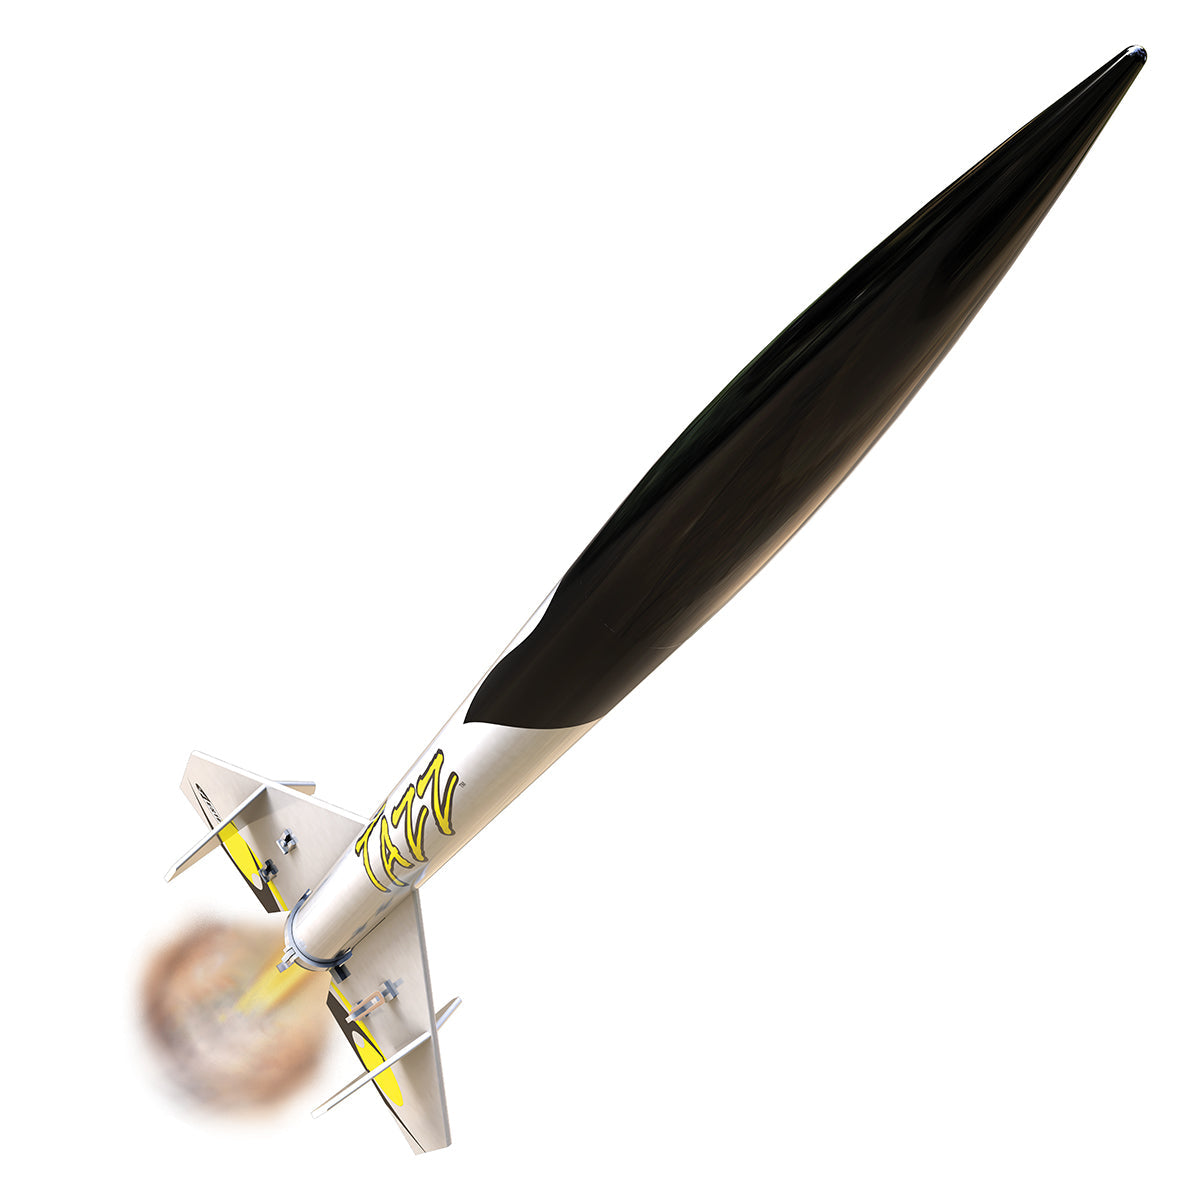 Estes Tazz Model Rocket